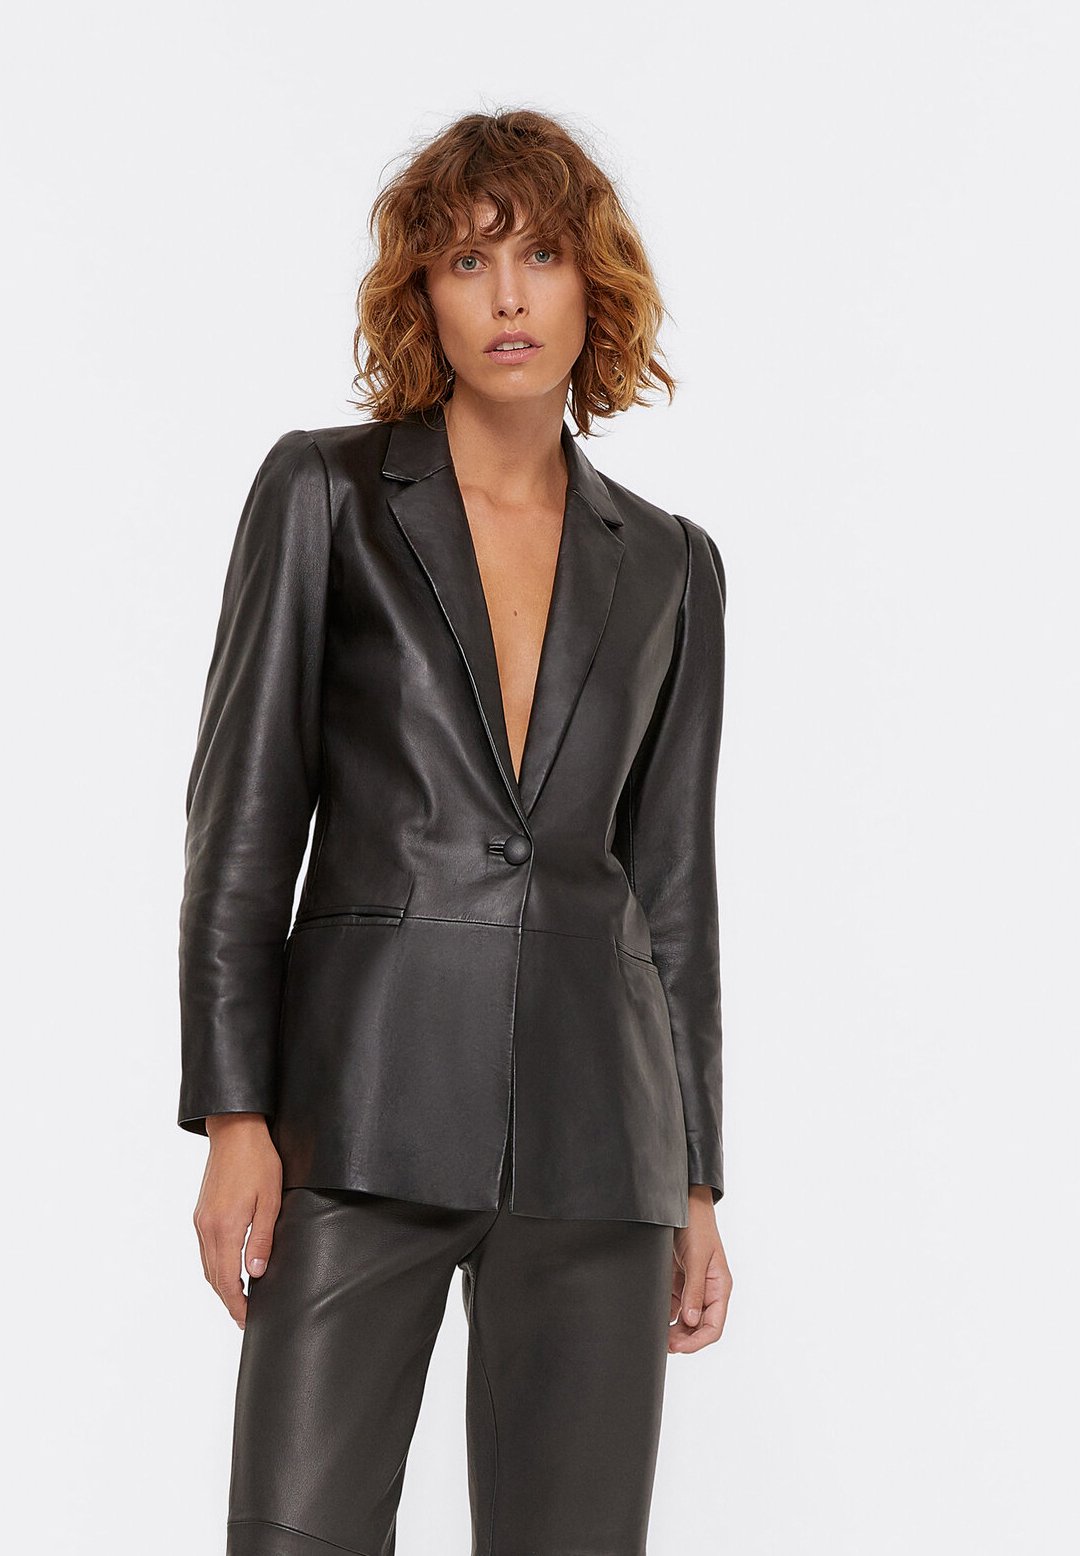 Women’s Sheepskin Classic Black Leather Blazer